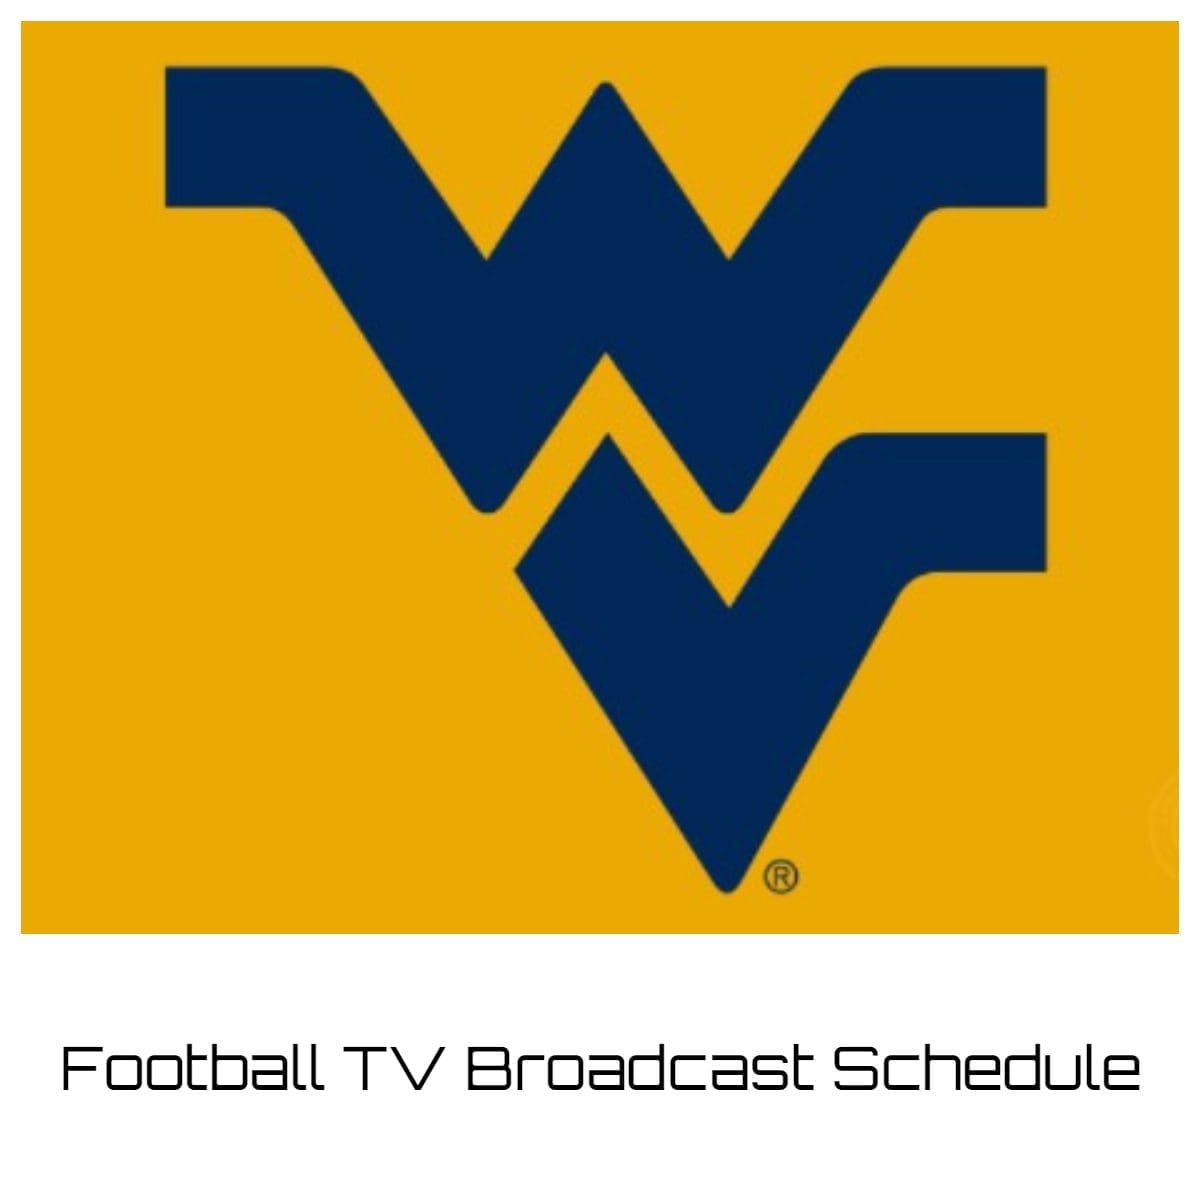 West Virginia Mountaineers Football TV Broadcast Schedule